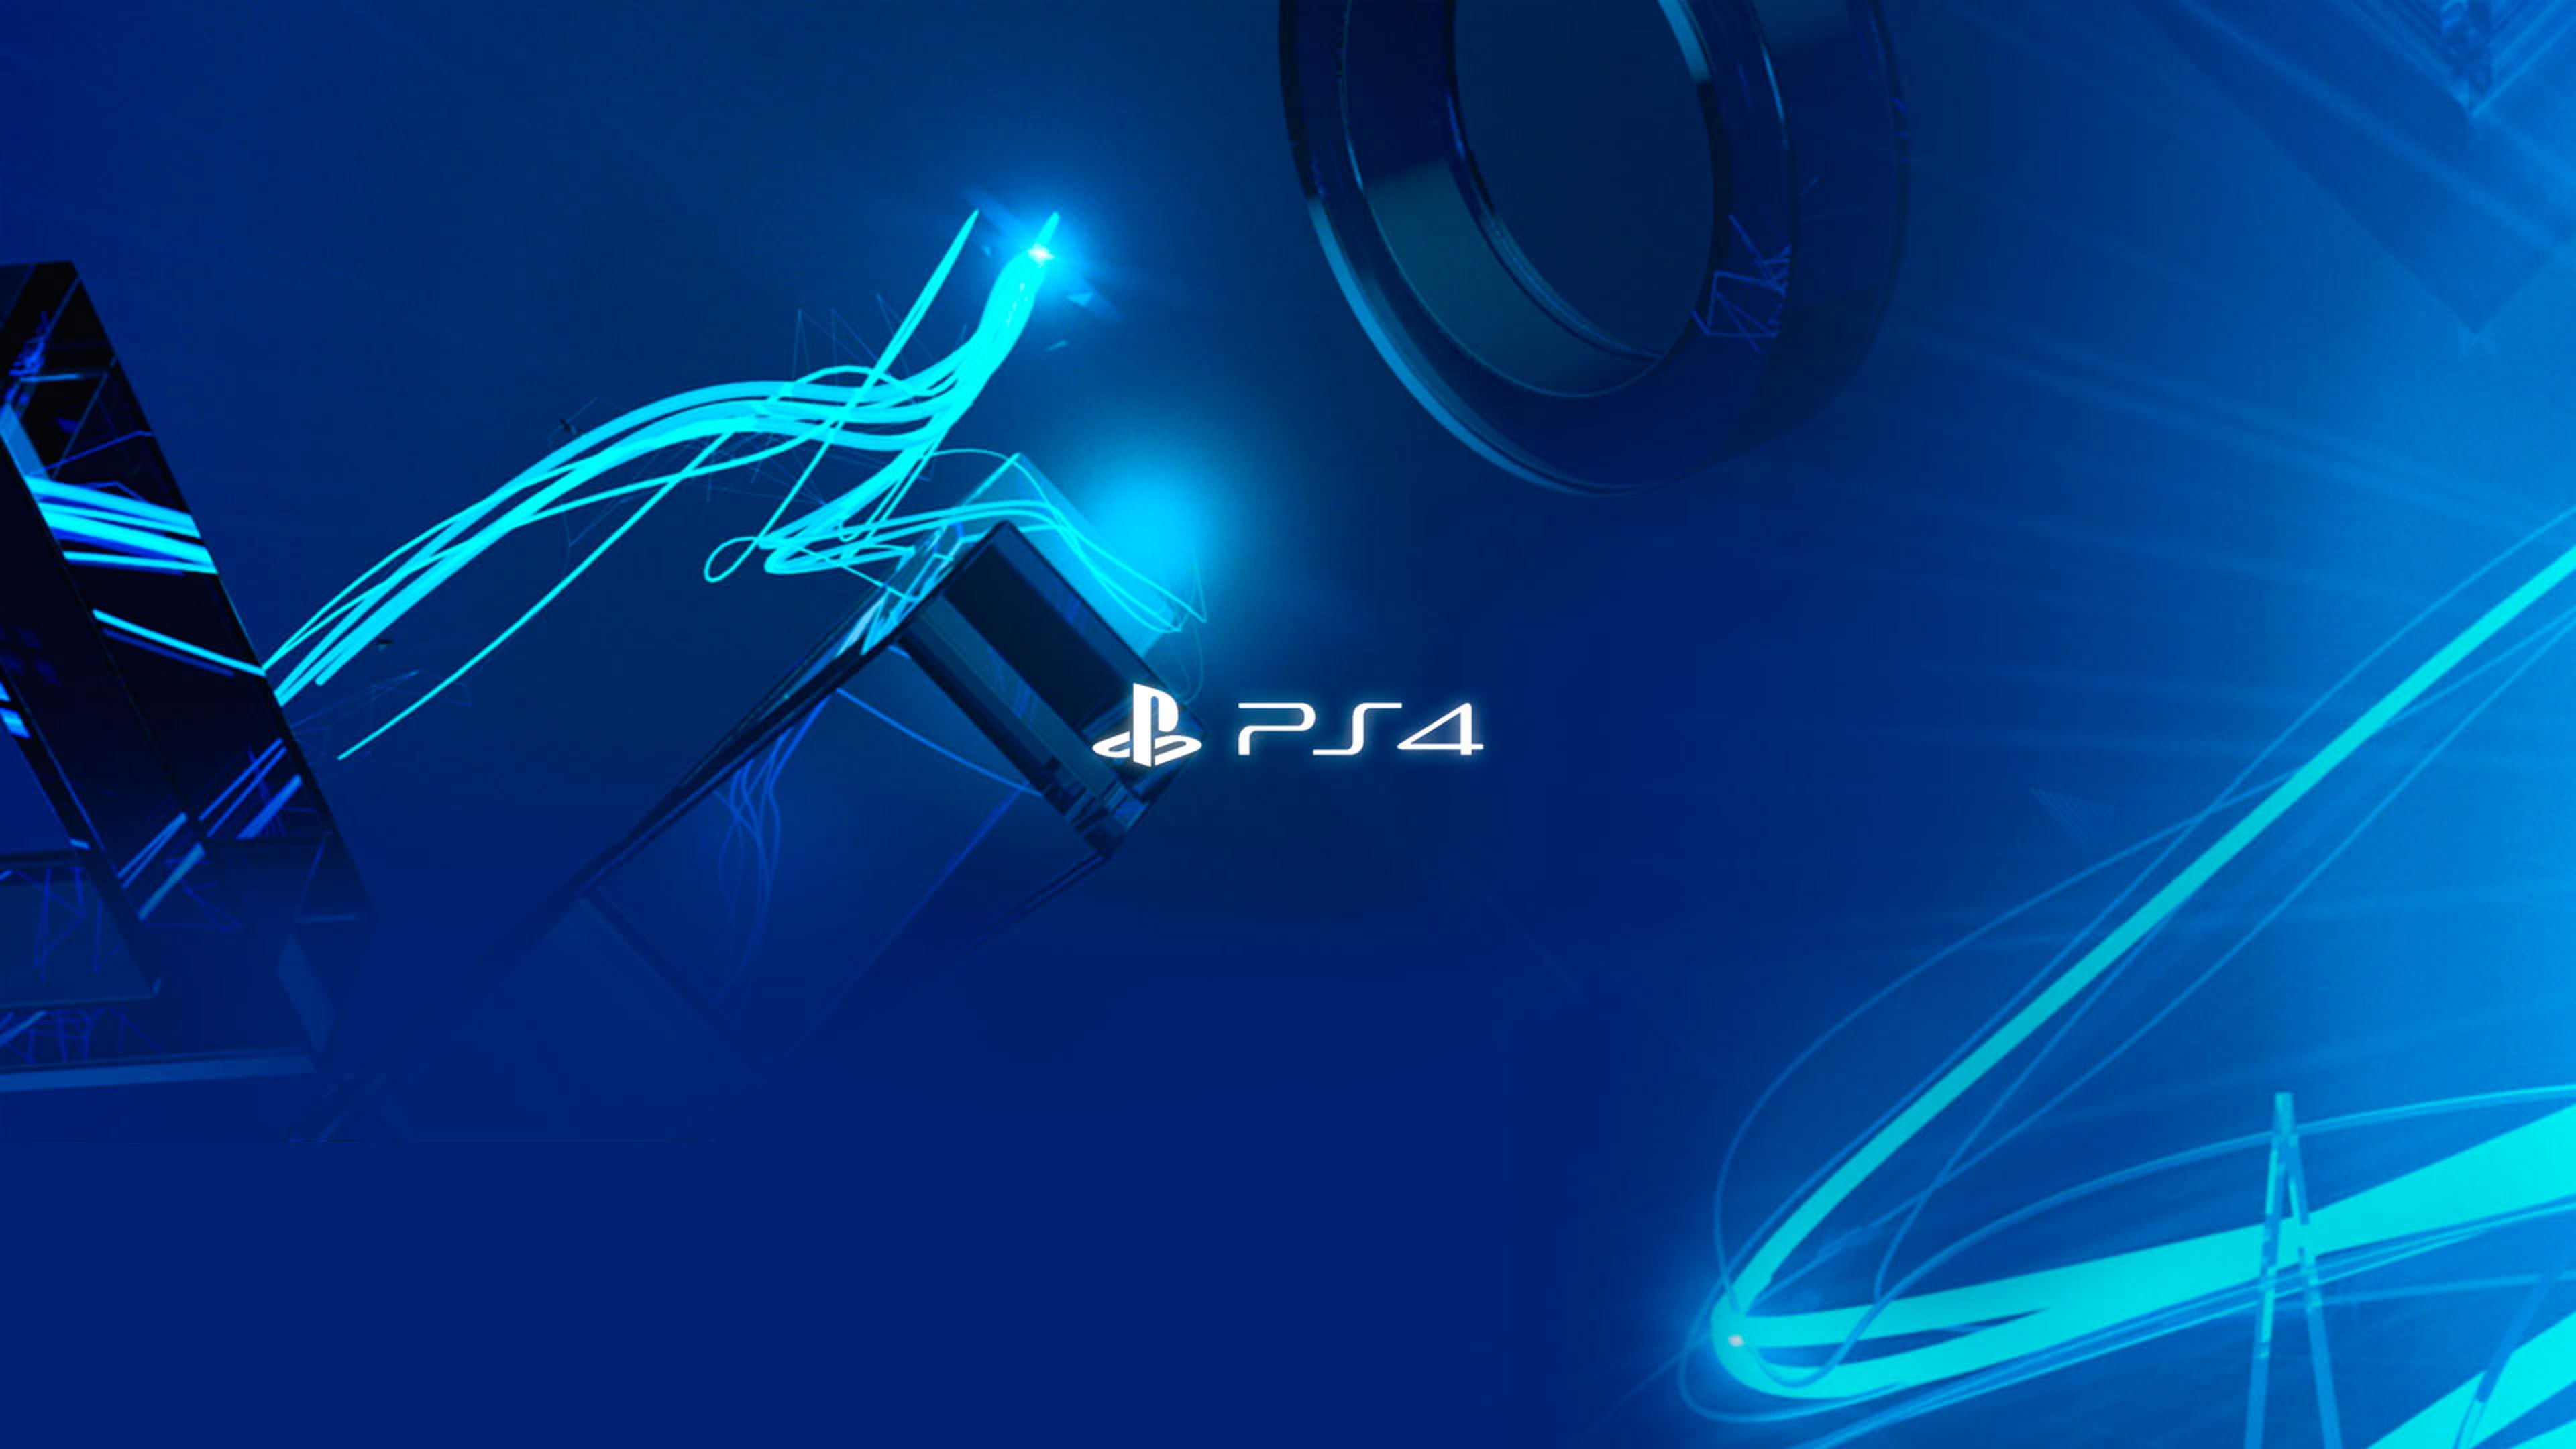 Sony espera vender 3 millones de PS4 antes de 2014